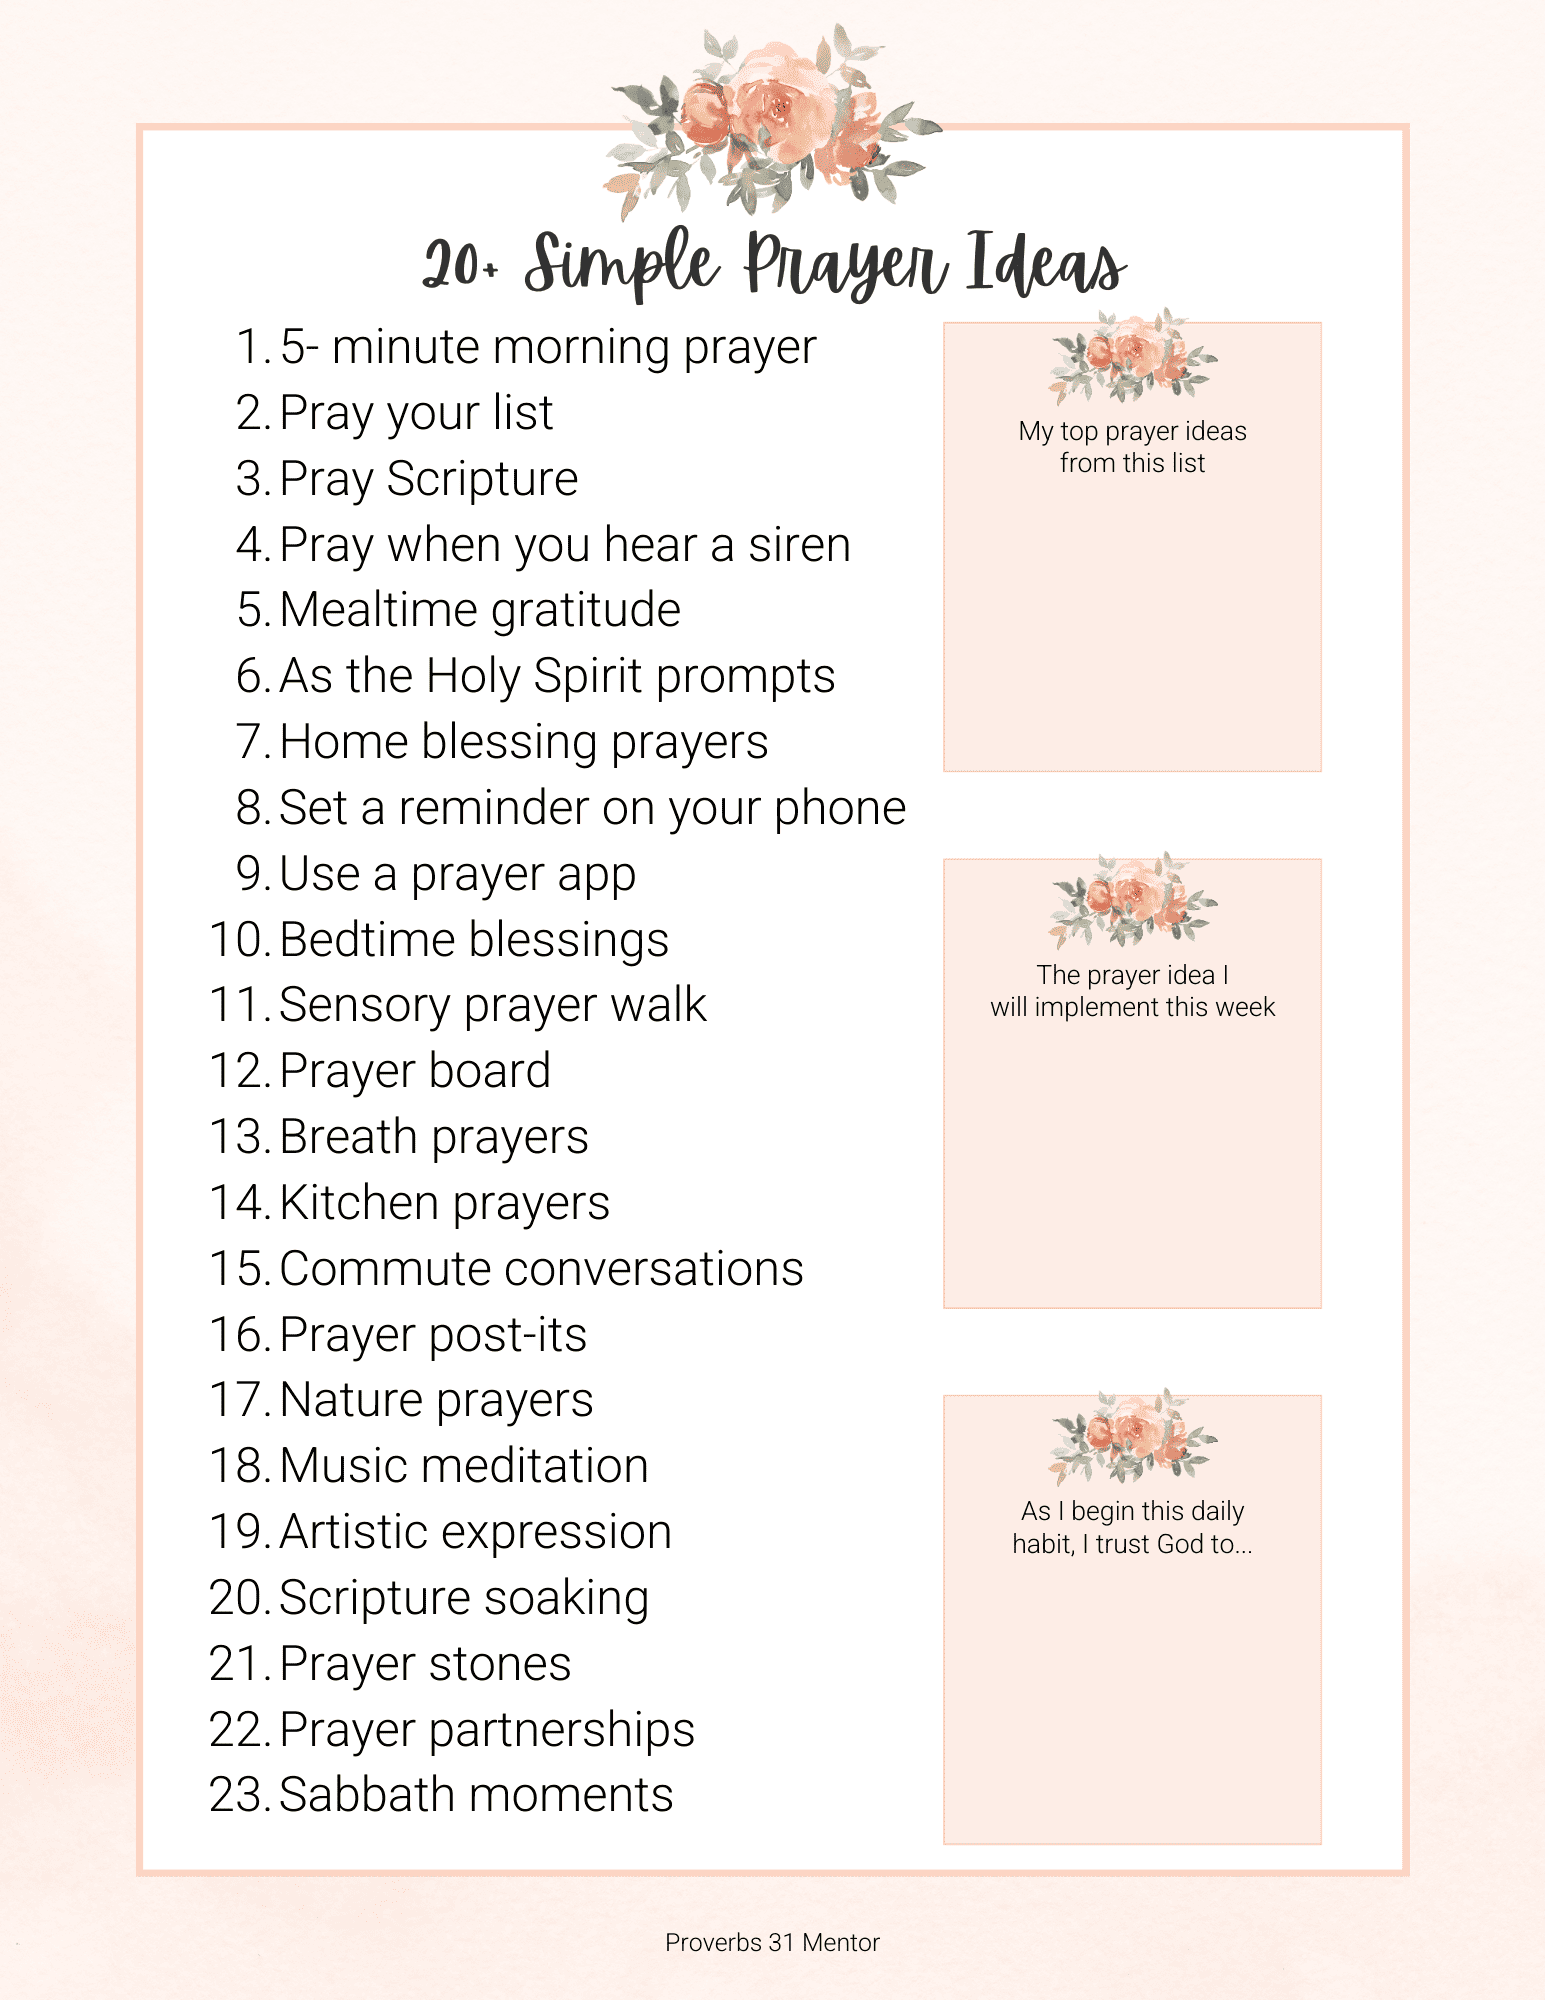 Printable list of Simple Prayer Ideas 